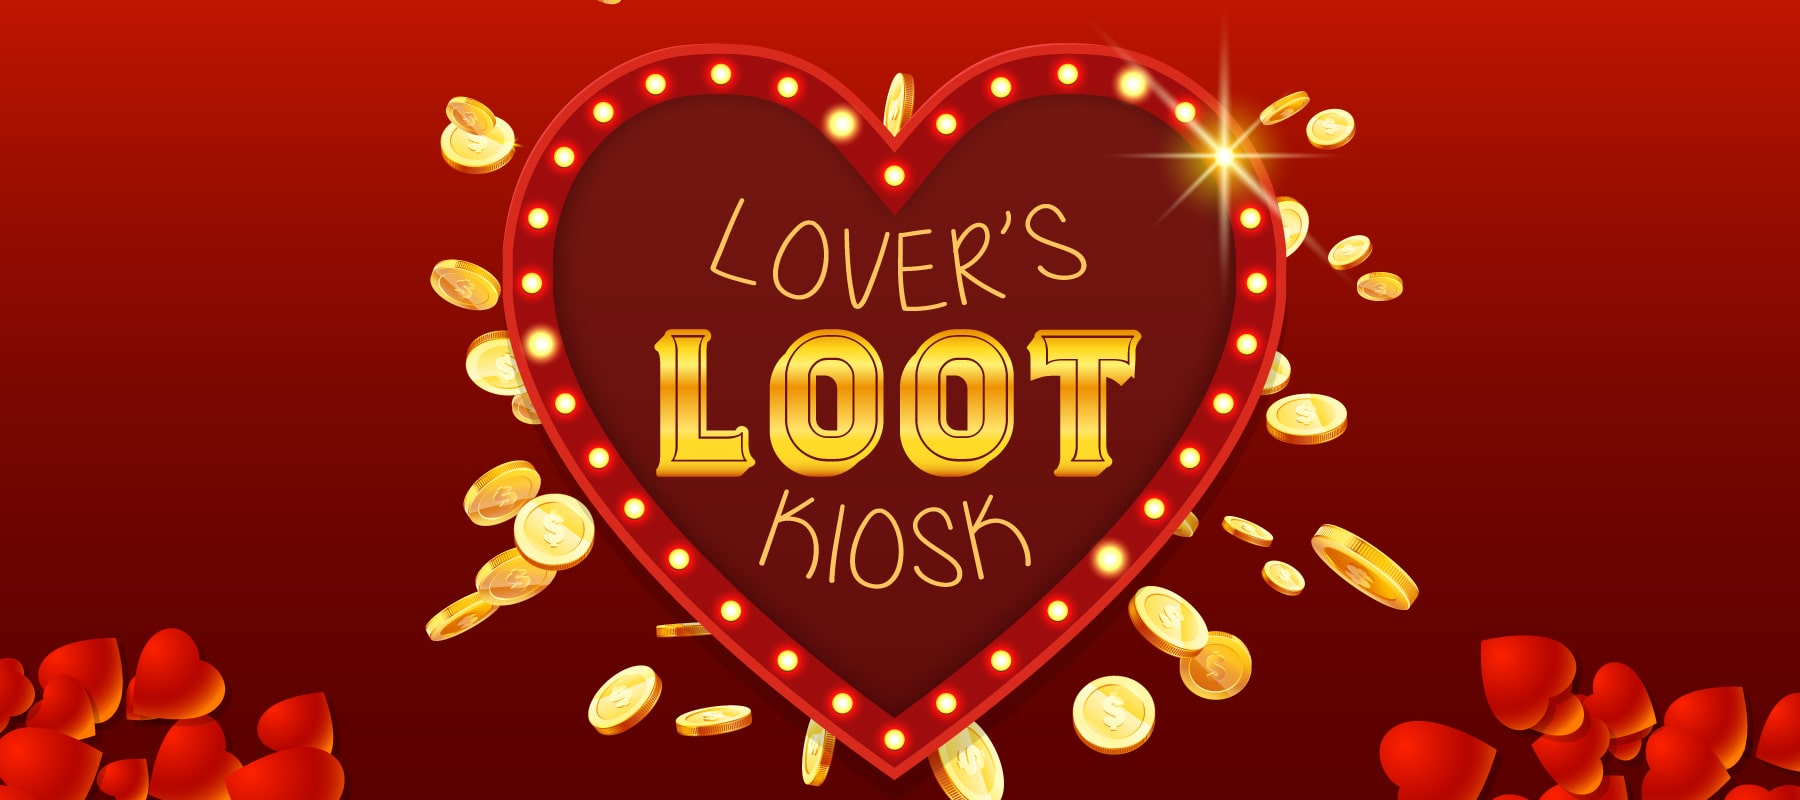 lovers loot kiosk